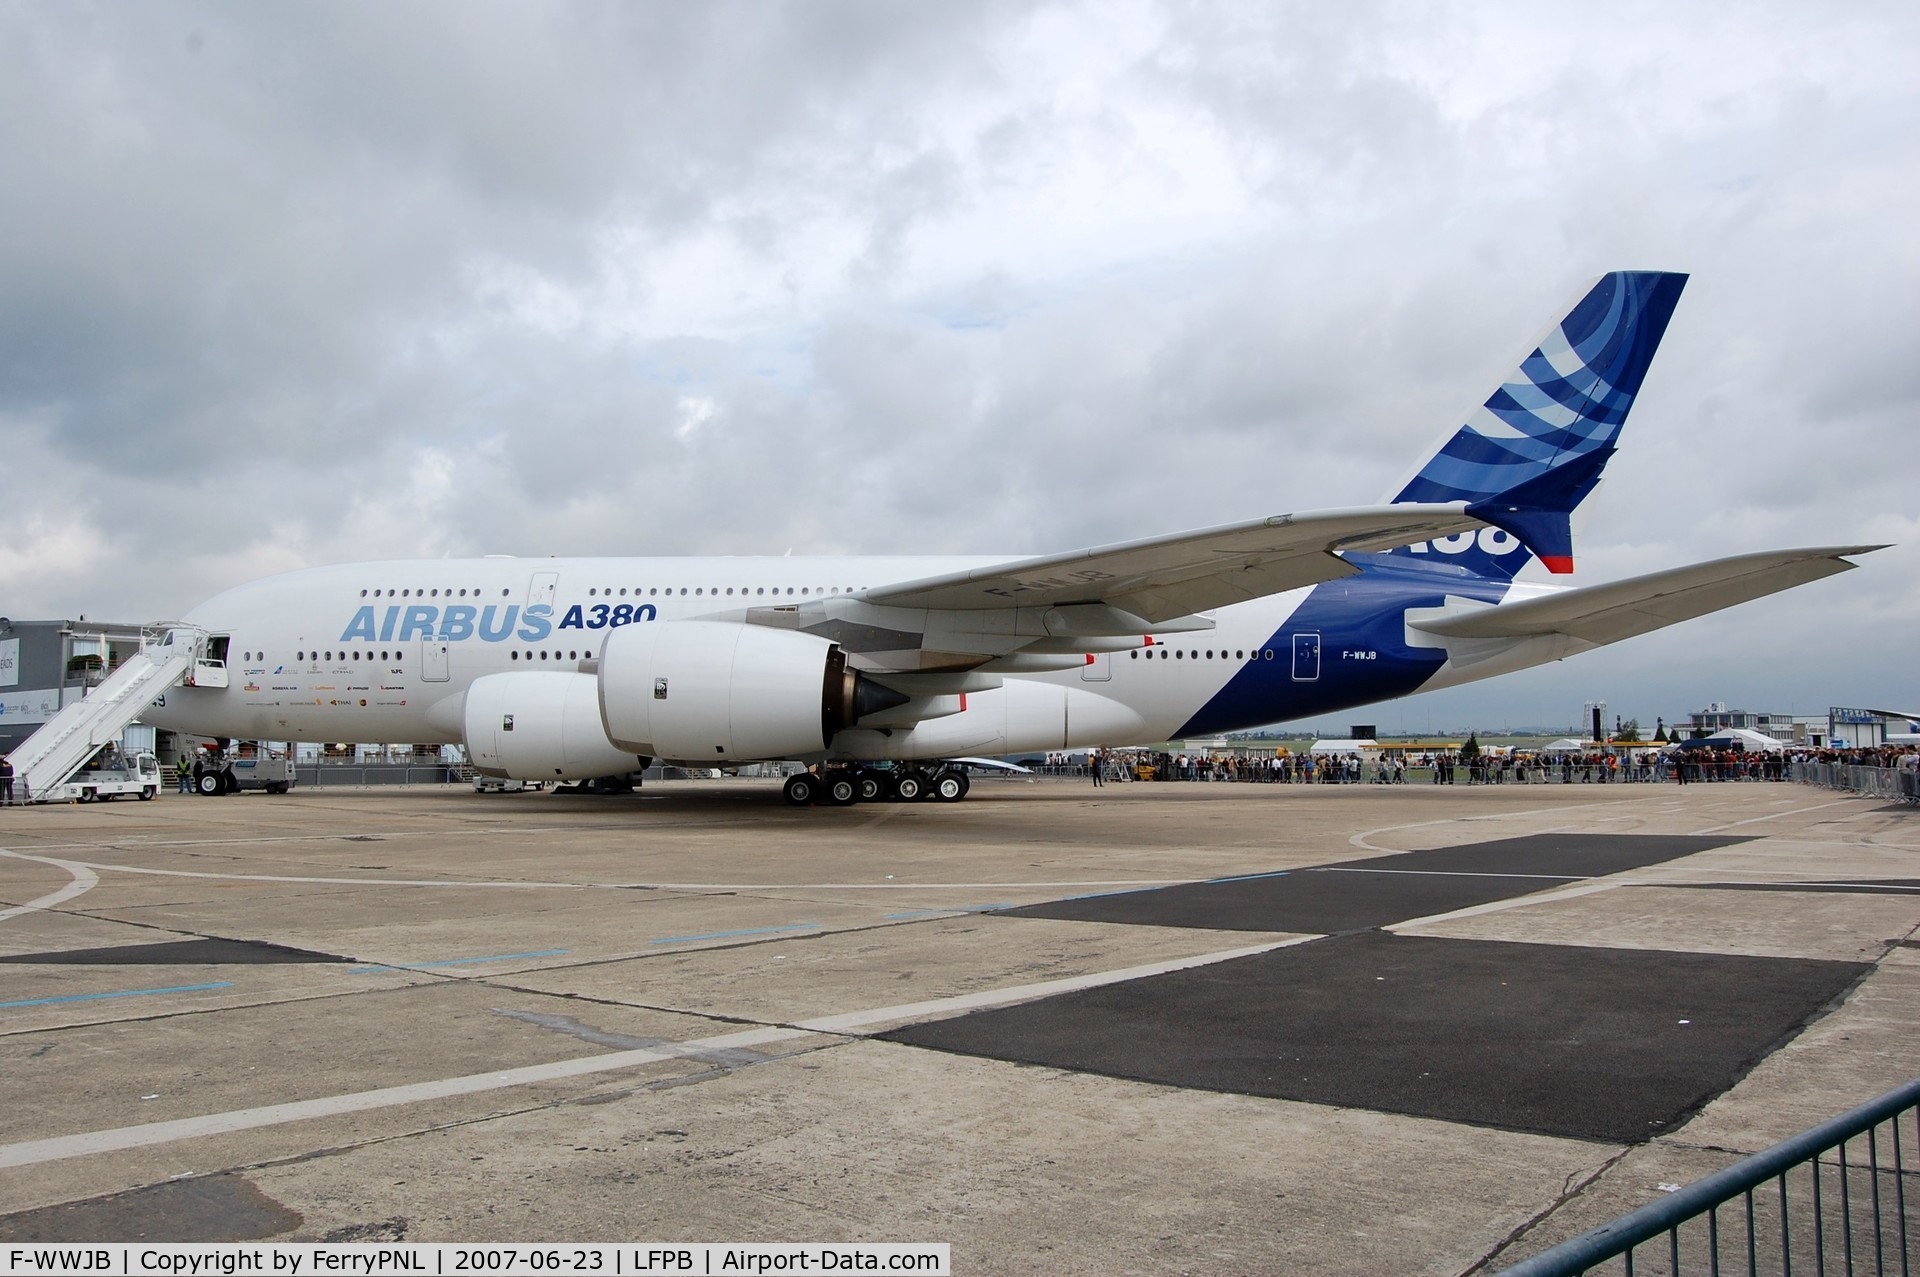 F-WWJB, 2006 Airbus A380-861 C/N 007, A380 demonstrator